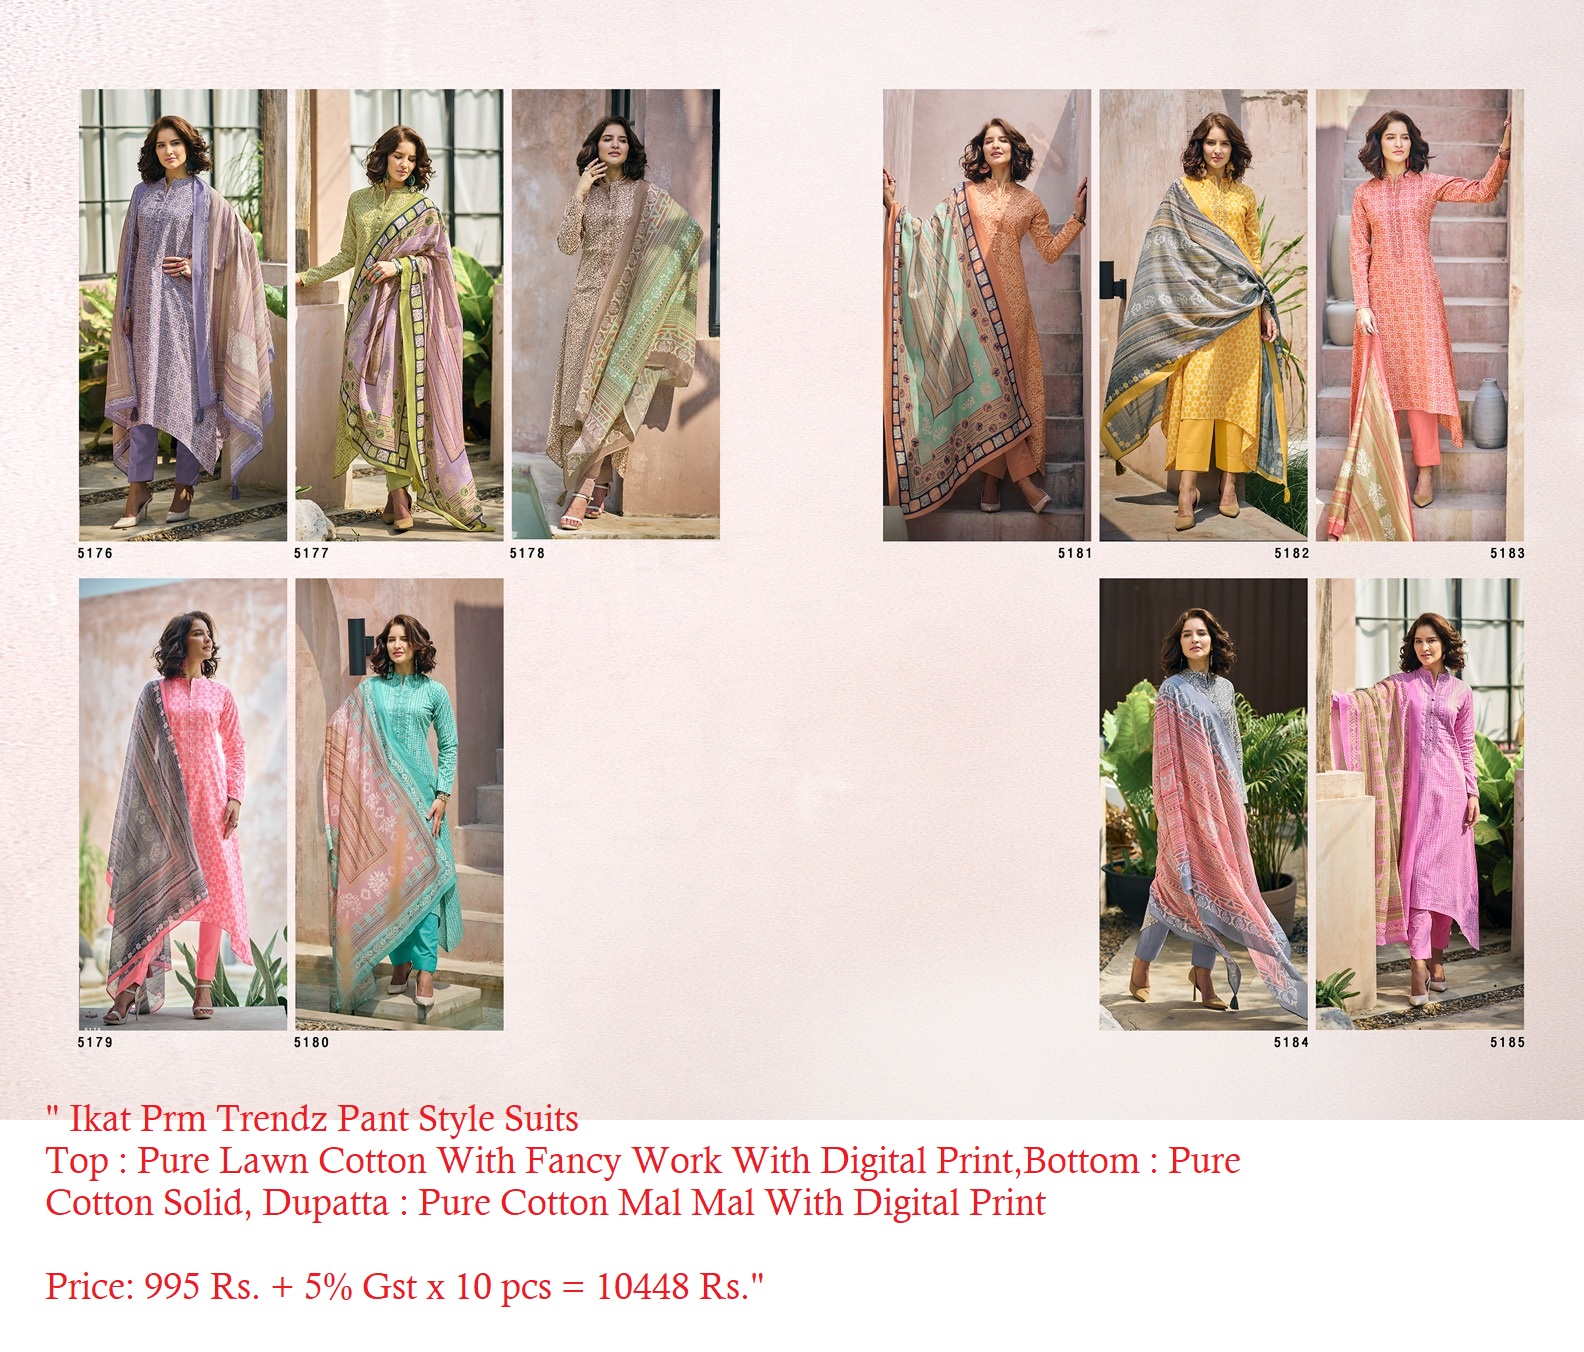 Ikat Prm Trendz Pant Style Suits Manufacturer Wholesaler